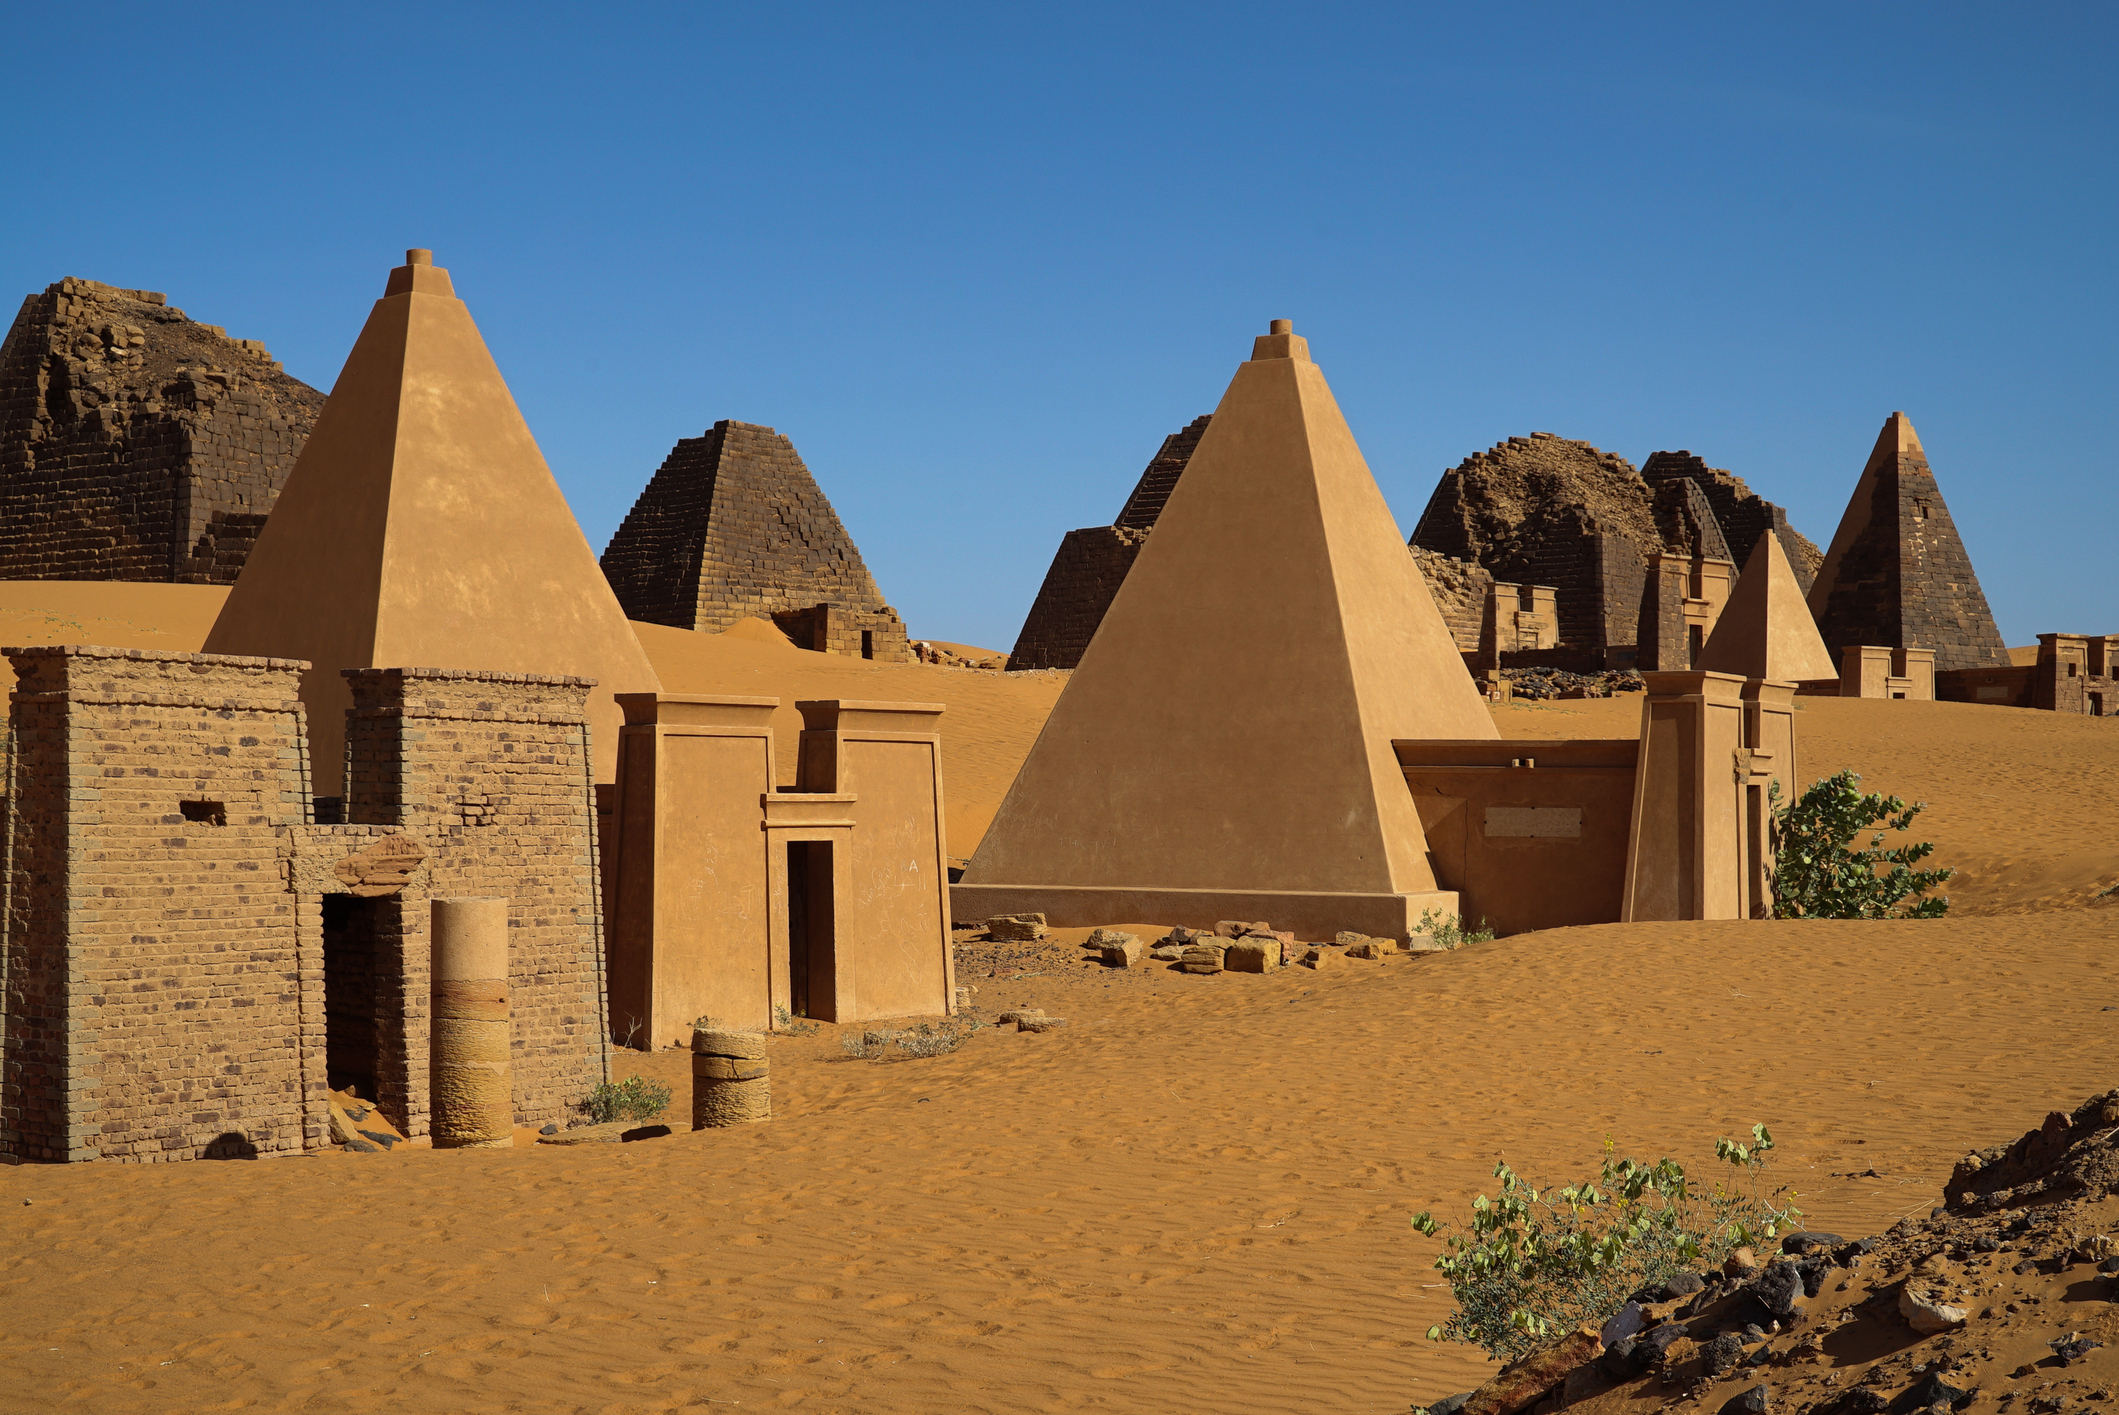 Характер взаимоотношений с природой цивилизации мероэ. Пирамиды Мероэ Судан. Нубийские пирамиды Мероэ. Пирамиды Нубии в Египте. Нубийские пирамиды в Судане.